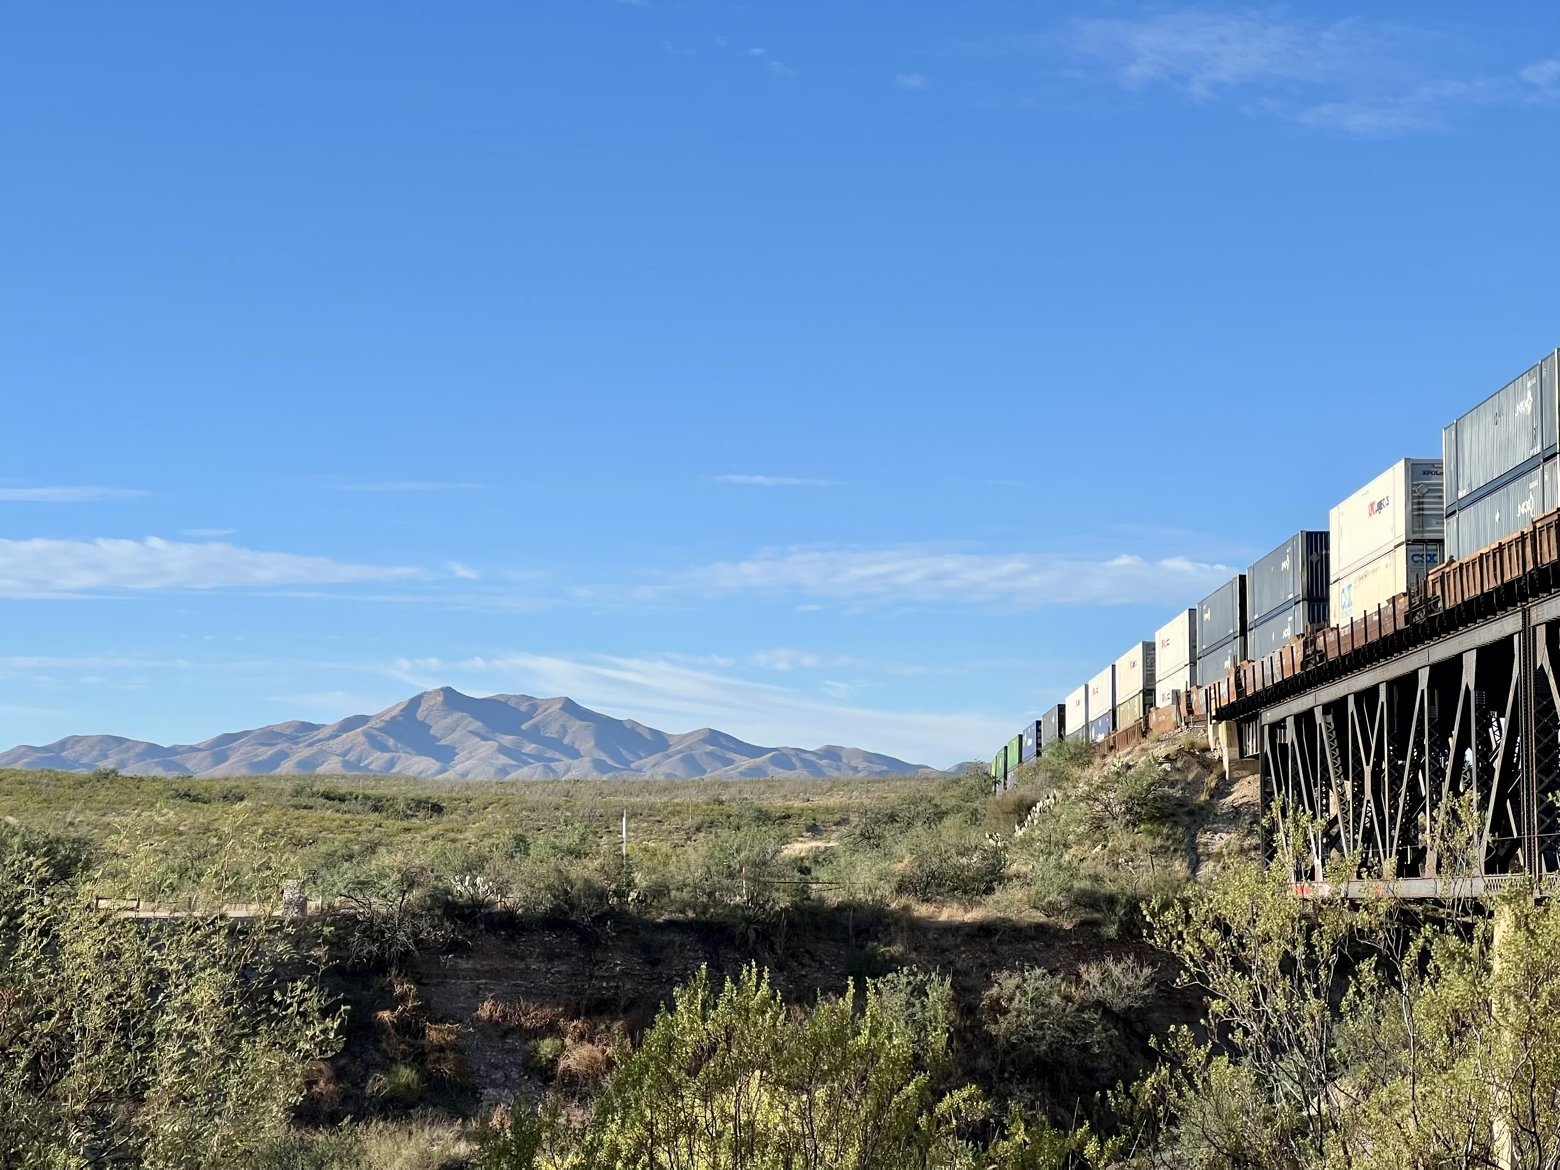 Tucson-bound train and mountain